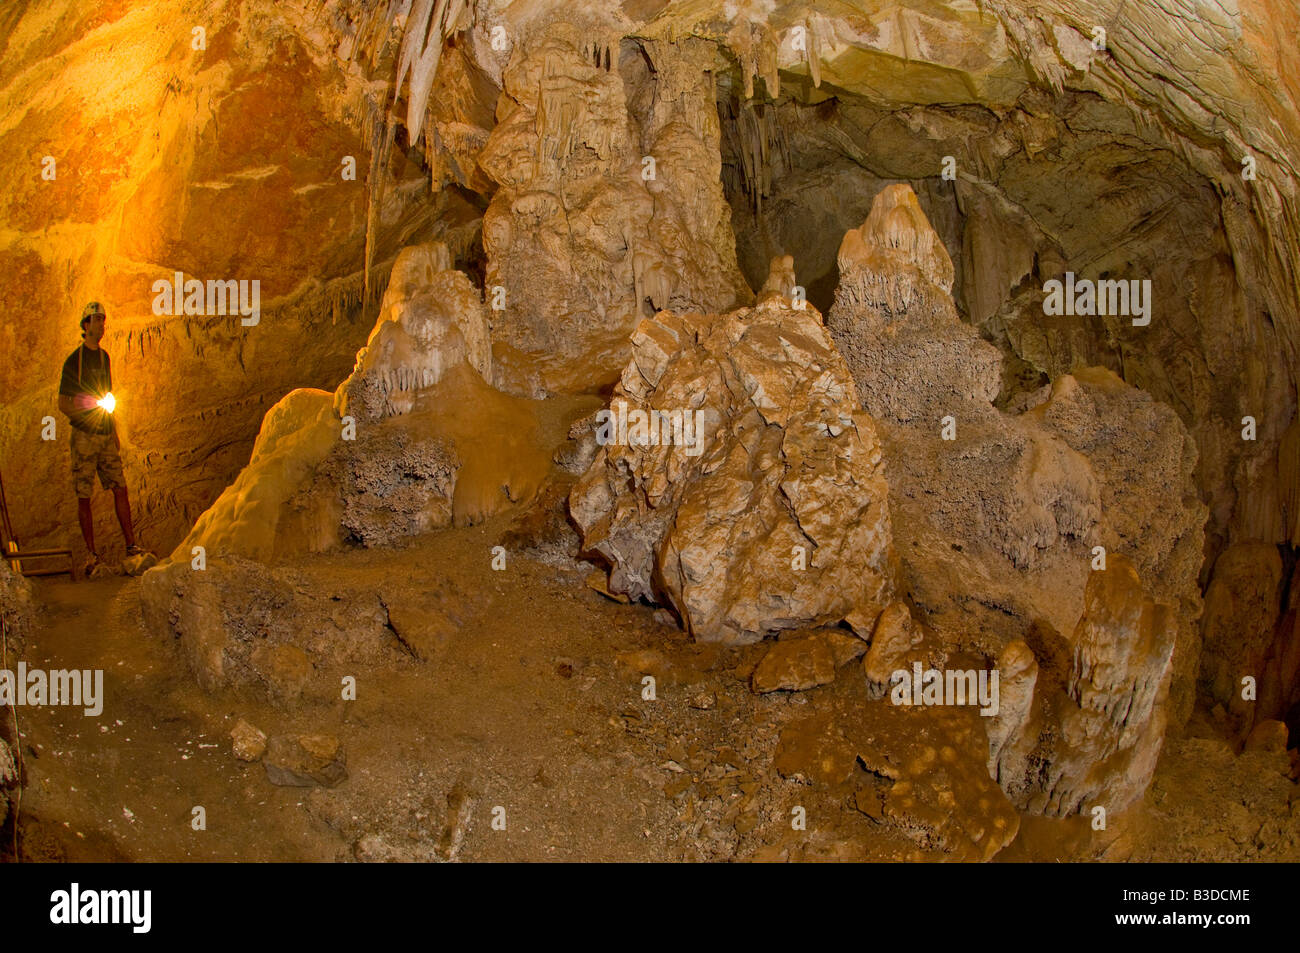 Grotte de São Miguel dans le Mato Grosso do Sul, Brésil. La grotte a été créé par l'action corrosive de l'eau. Banque D'Images